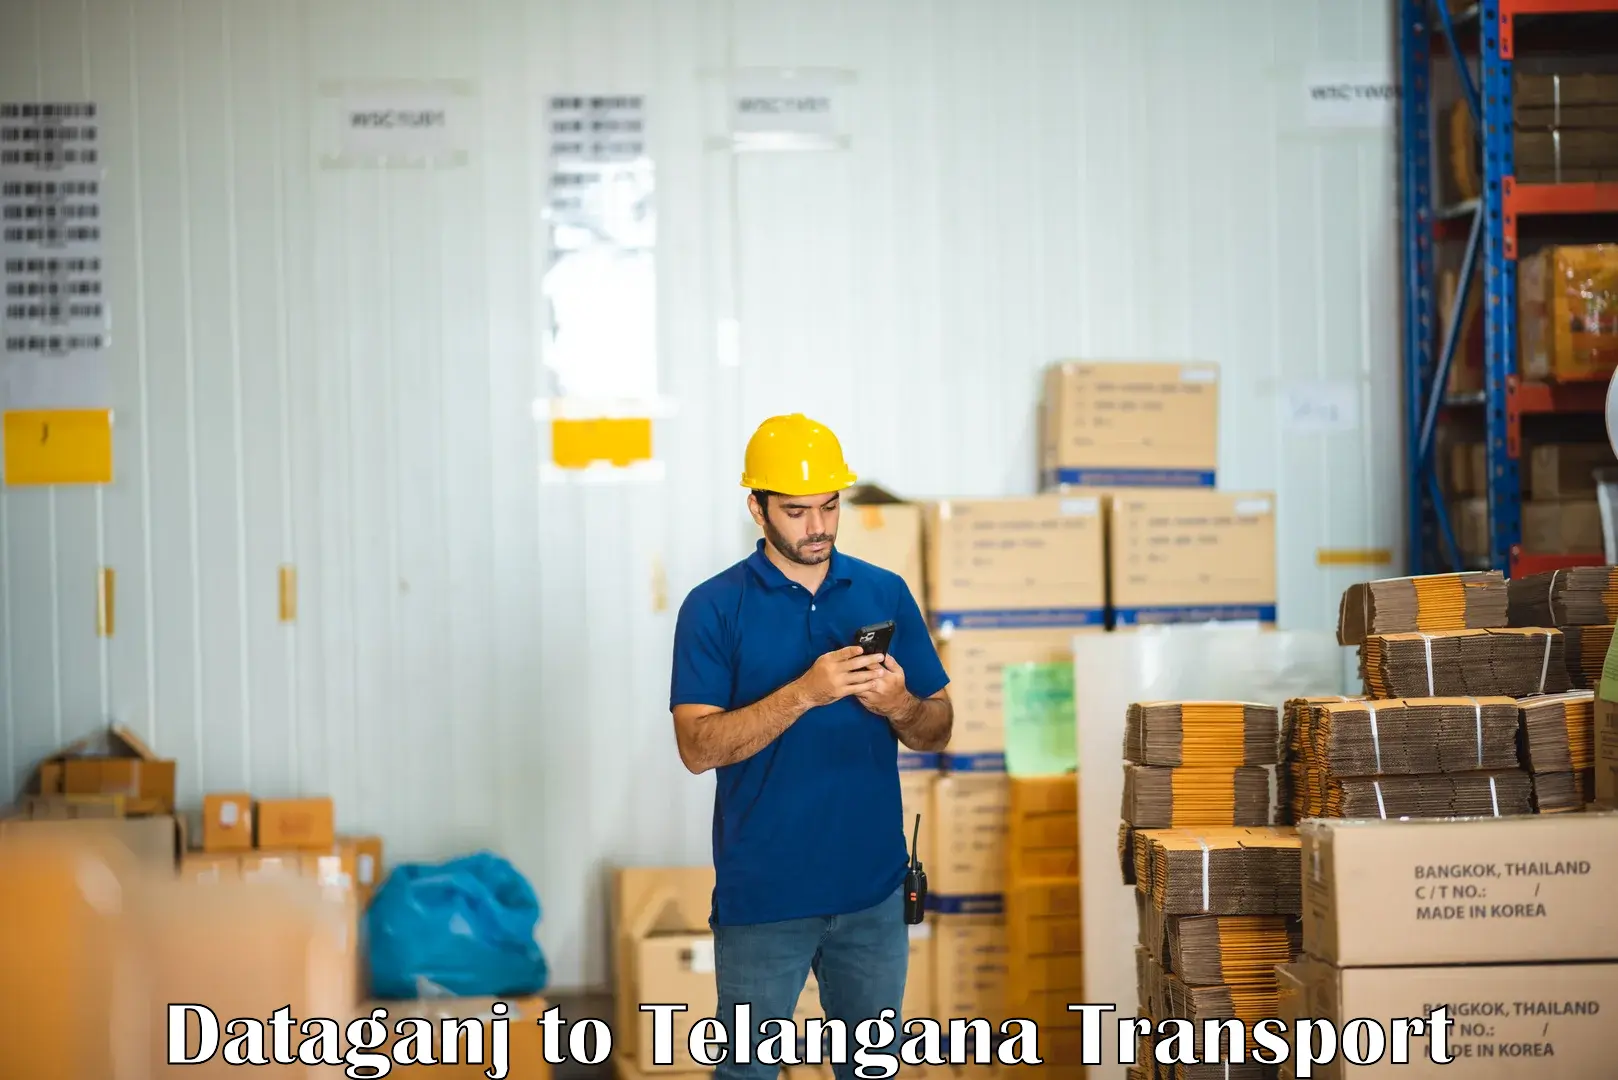 Transport in sharing Dataganj to Kalwakurthy